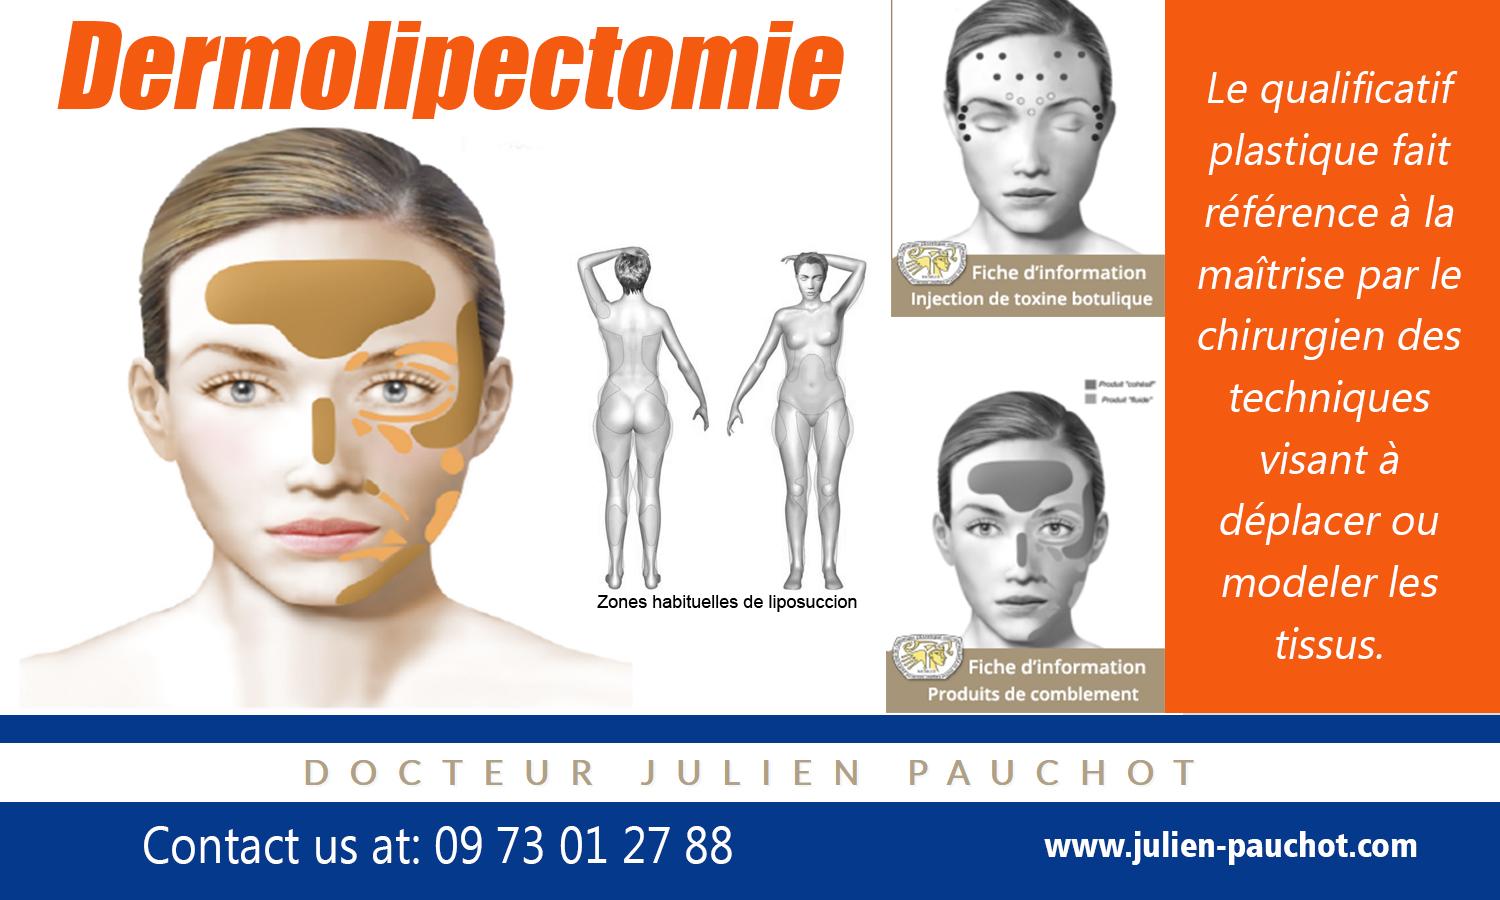 Dermolipectomie | http://www.julien-pauchot.com/ | http://www.julien-pauchot.com/